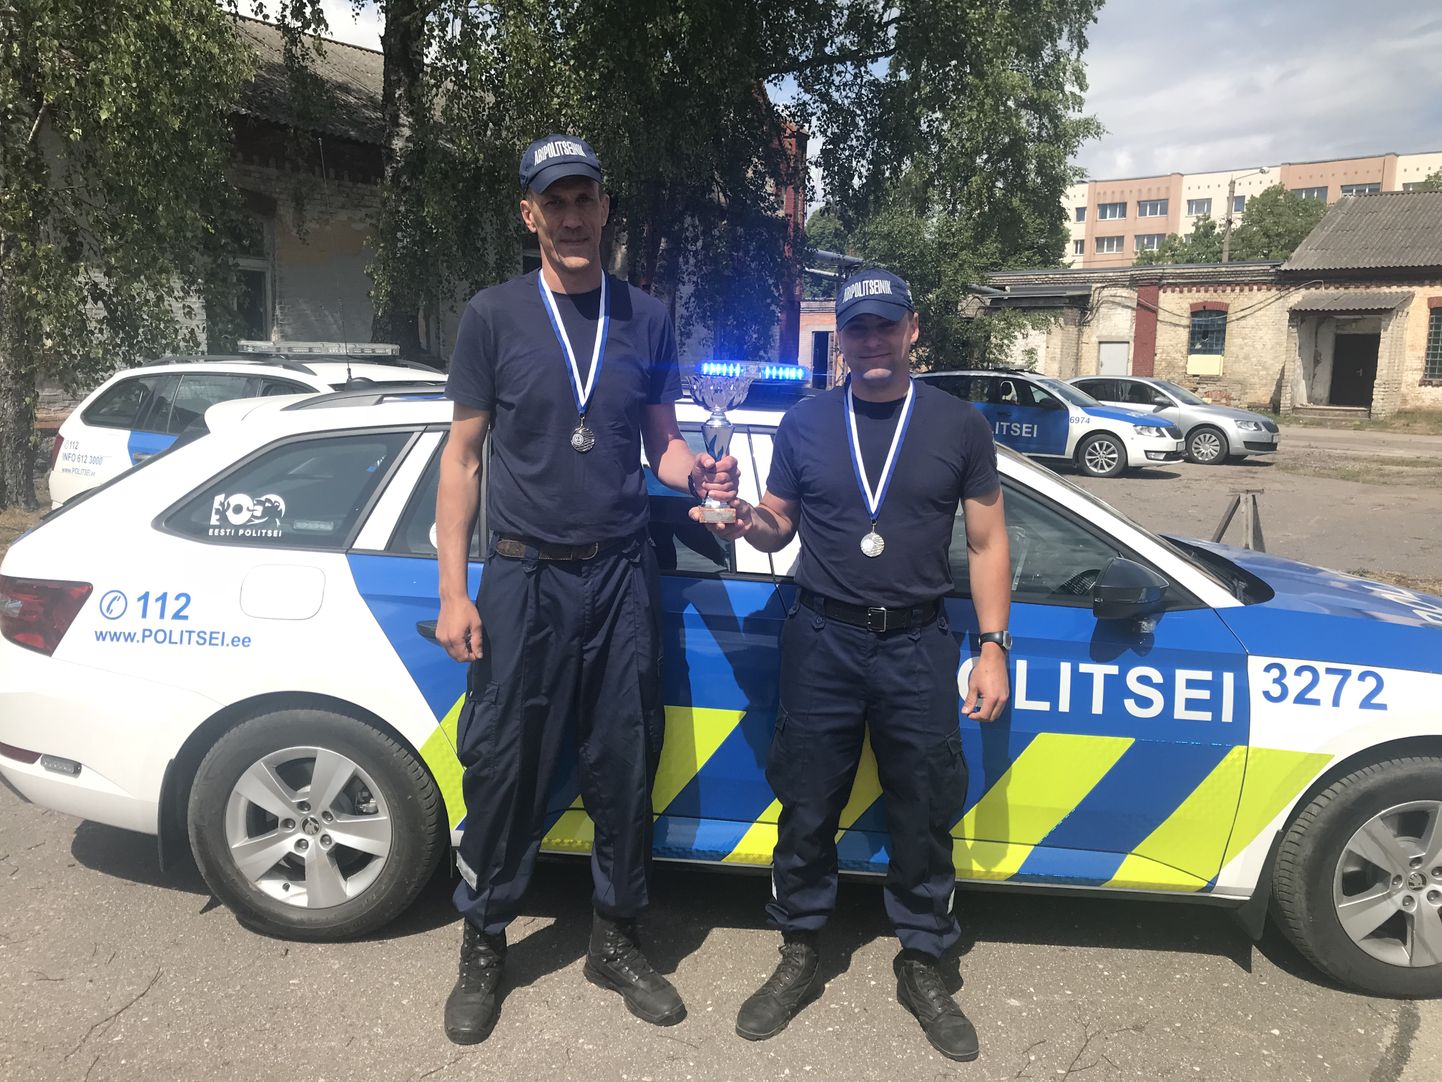 Lääne prefektuuri vabatahtlikud Aivar Kaus ja Mikko Kiisa saavutasid üleriigilisel abipolitseinike kutsemeisterlikkuse võistlustel teise koha.